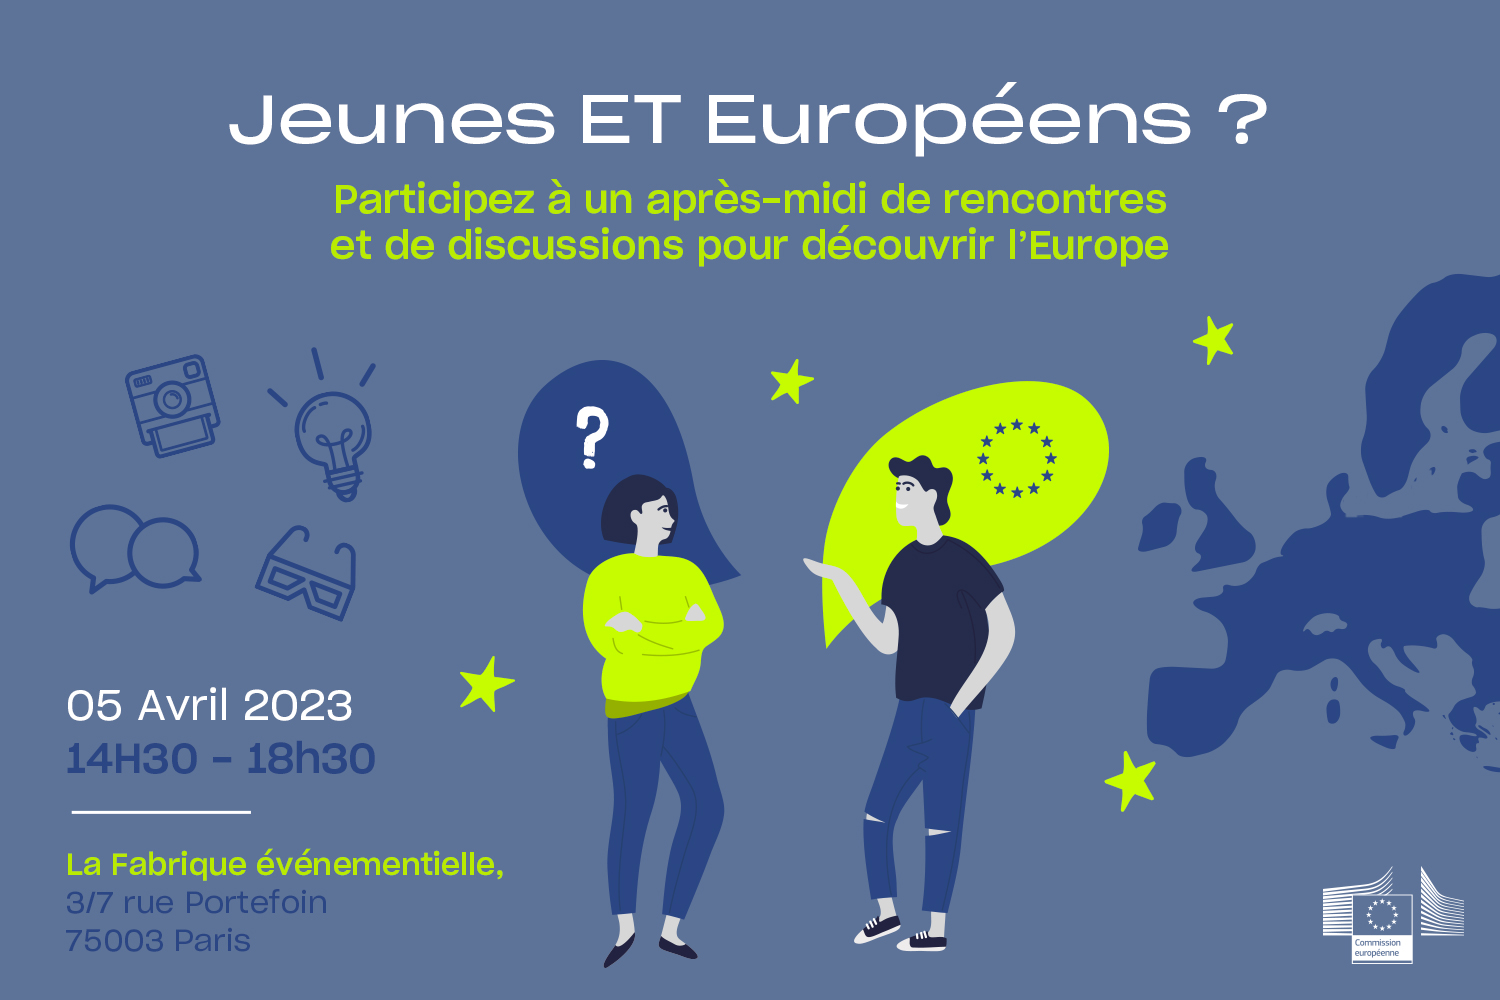 Jeunes et européens, évènement à Paris le 5 avril 2023